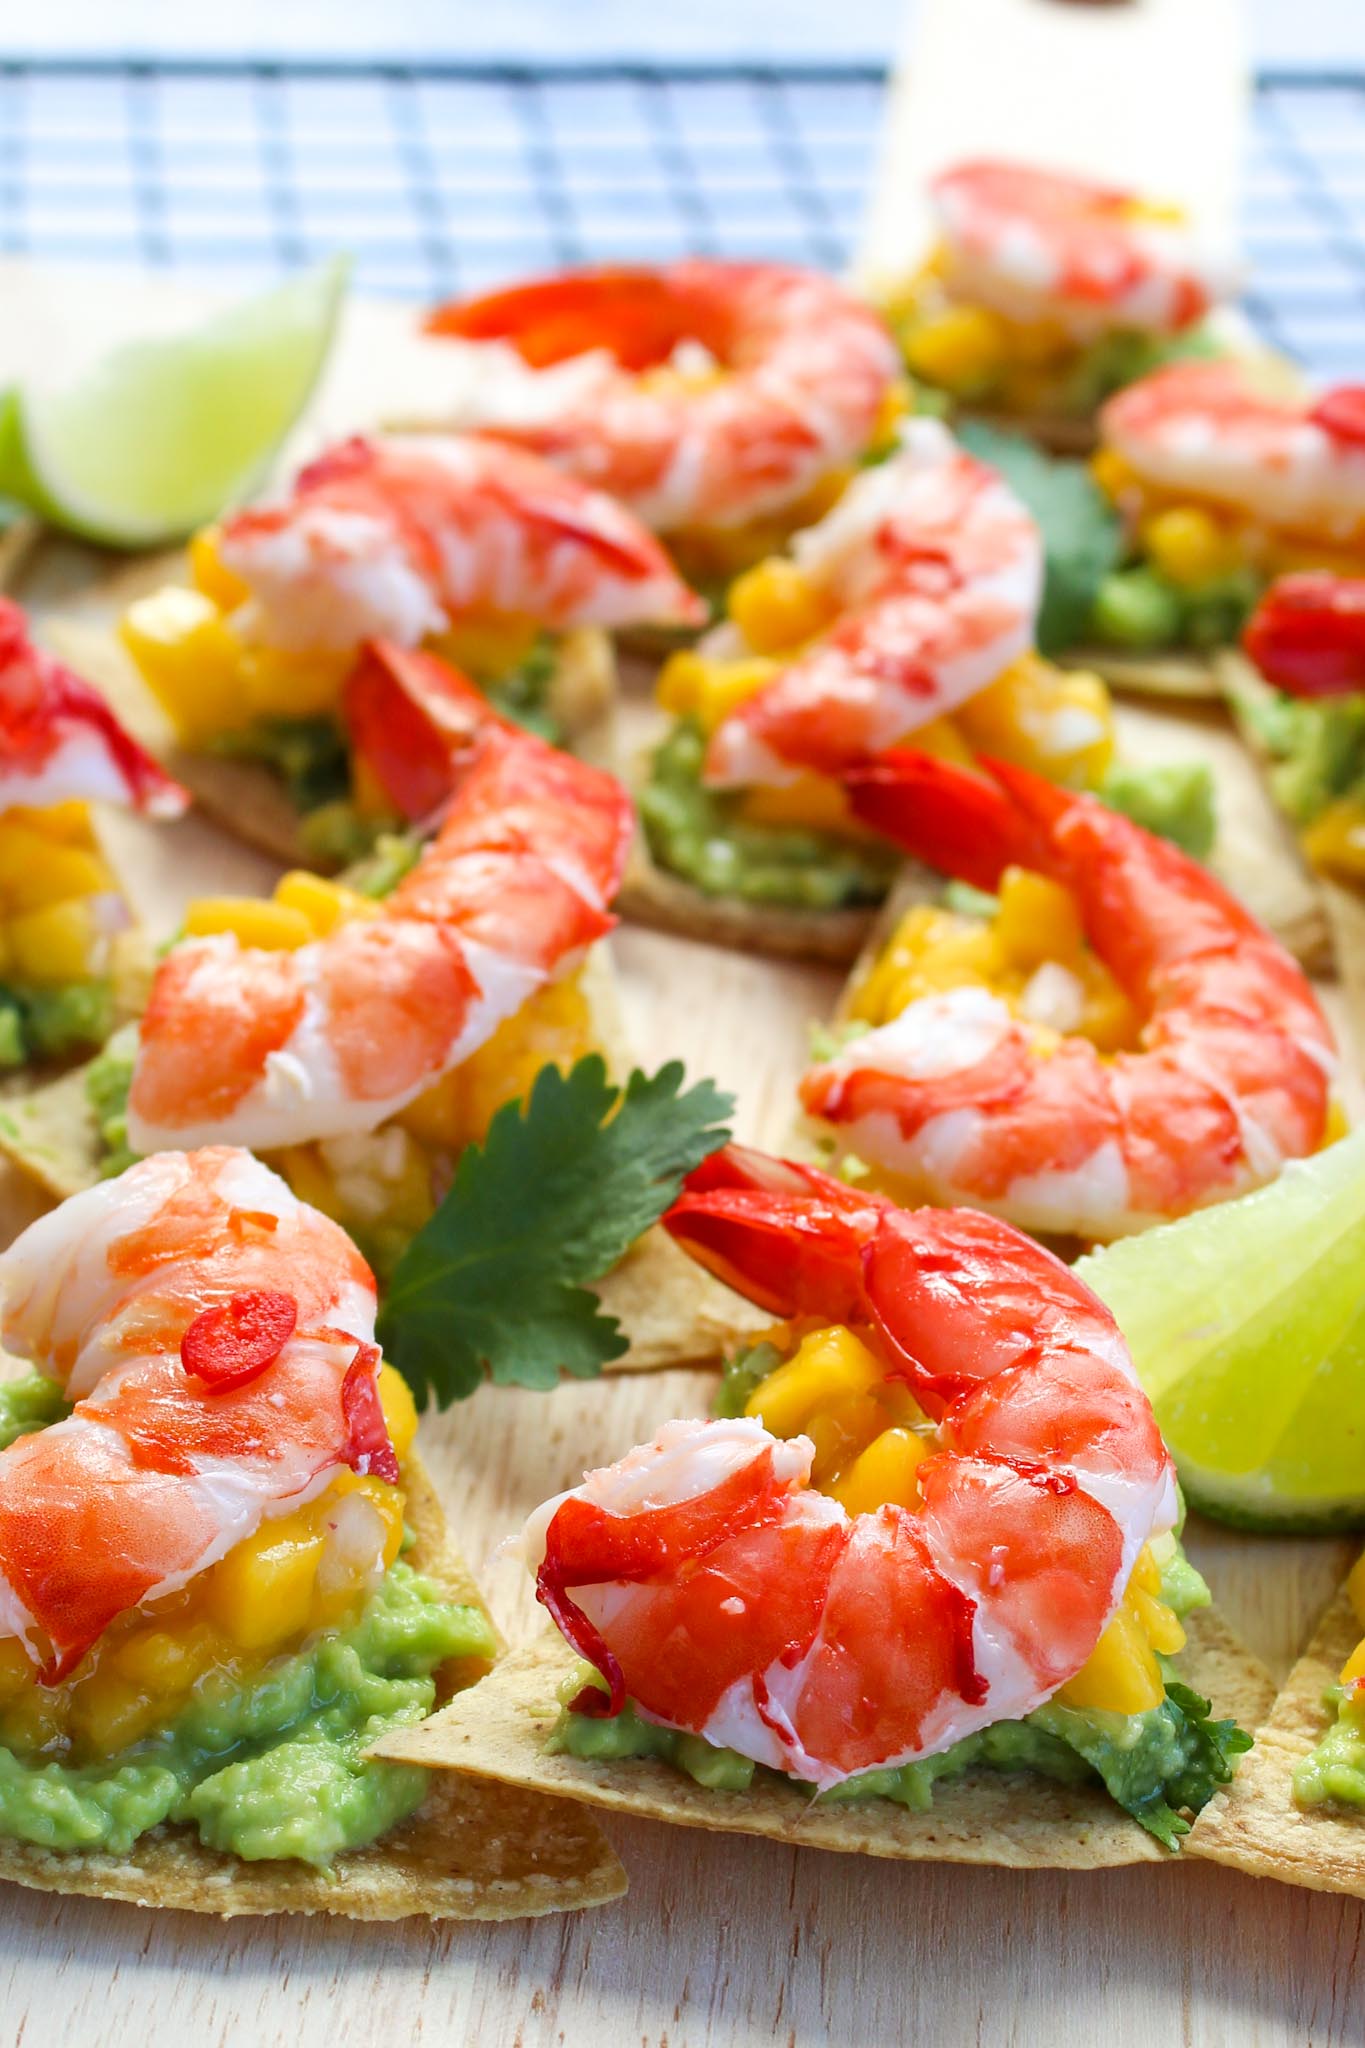 Shrimp appetizer recipe close up photo